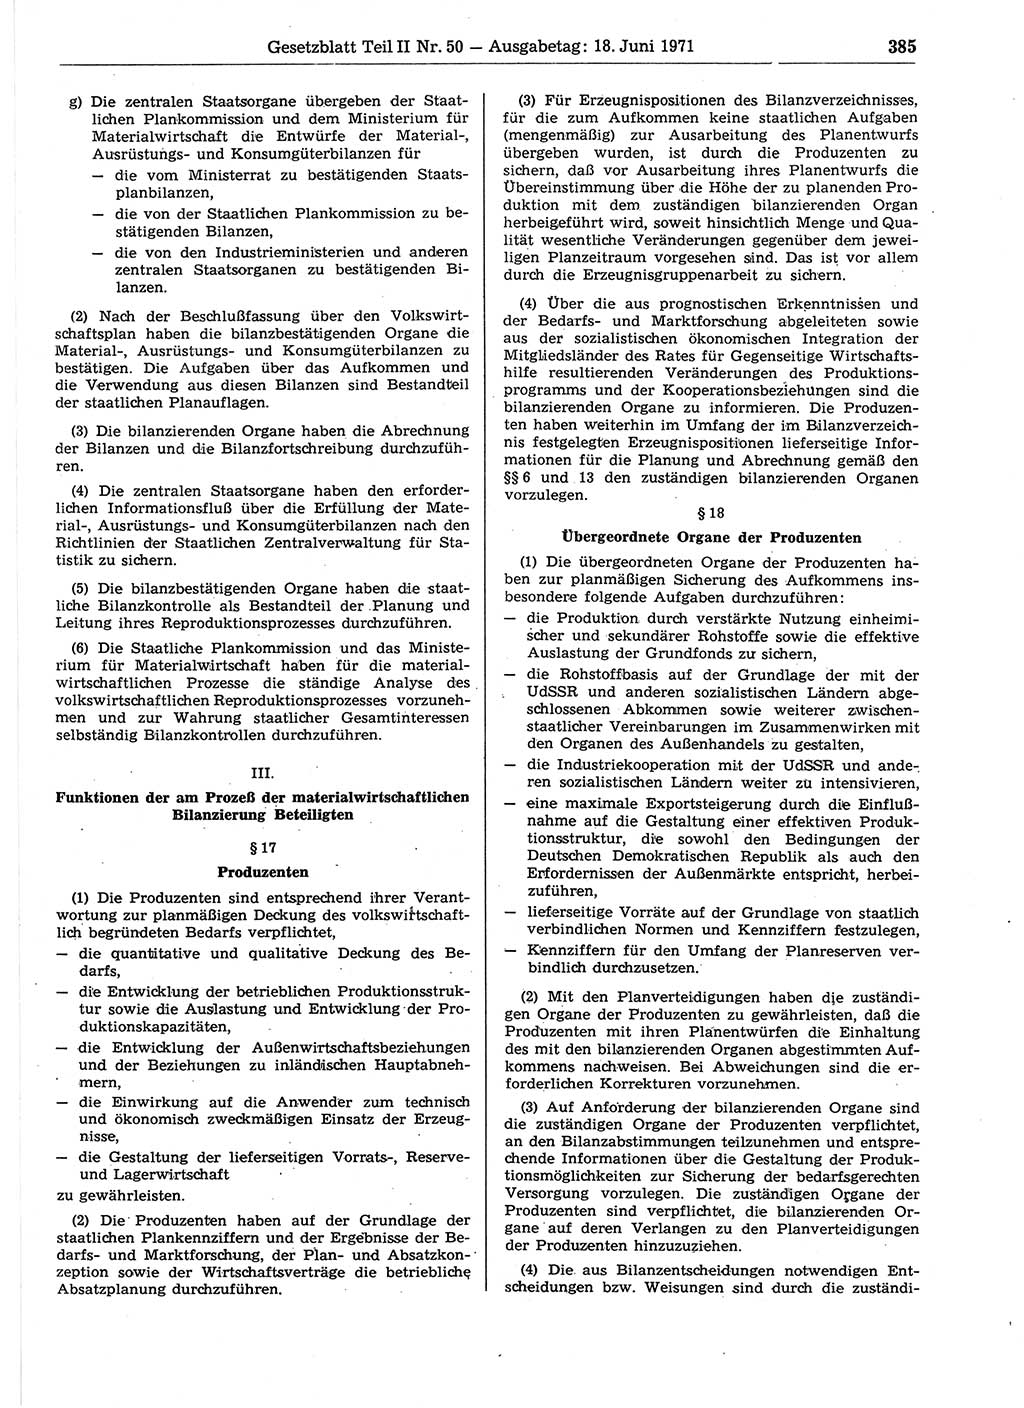 Gesetzblatt (GBl.) der Deutschen Demokratischen Republik (DDR) Teil ⅠⅠ 1971, Seite 385 (GBl. DDR ⅠⅠ 1971, S. 385)